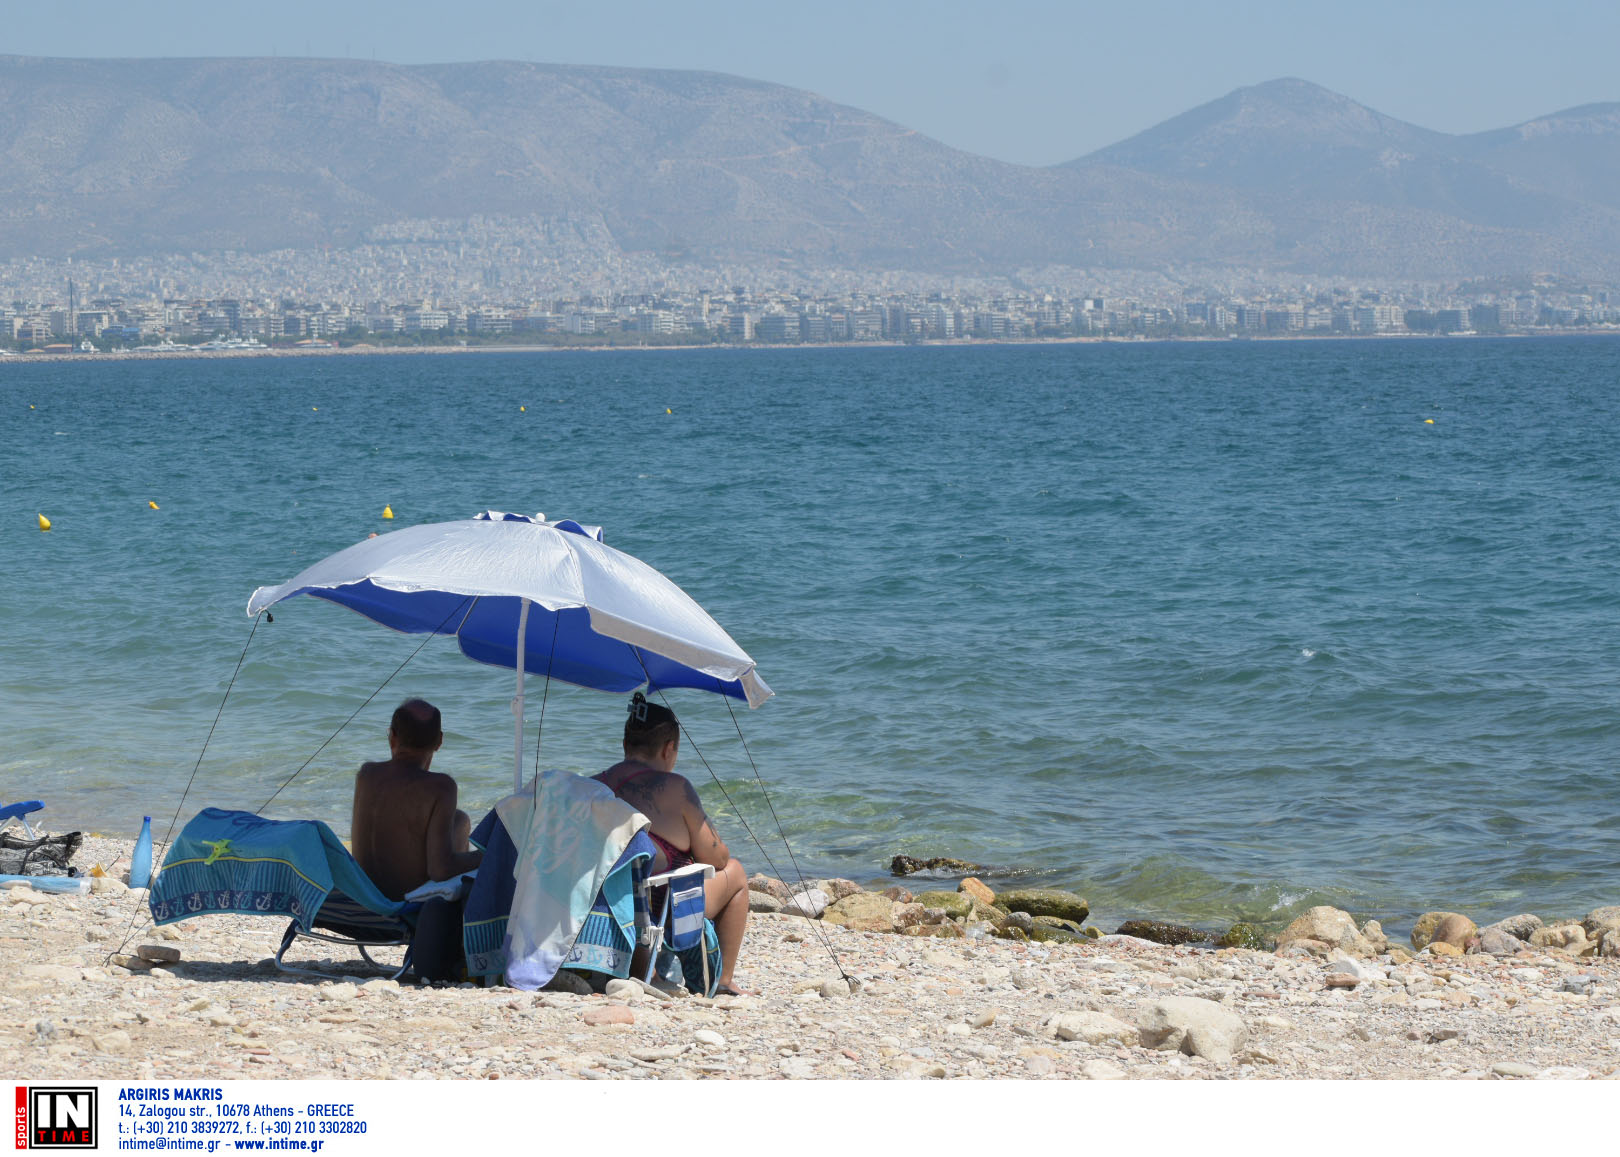 Σαρωτικοί  έλεγχοι στις παραλίες – «Μπαλάκι» οι ευθύνες για τις ξαπλώστρες, λέει ο Αντιδήμαρχος Κέρκυρας